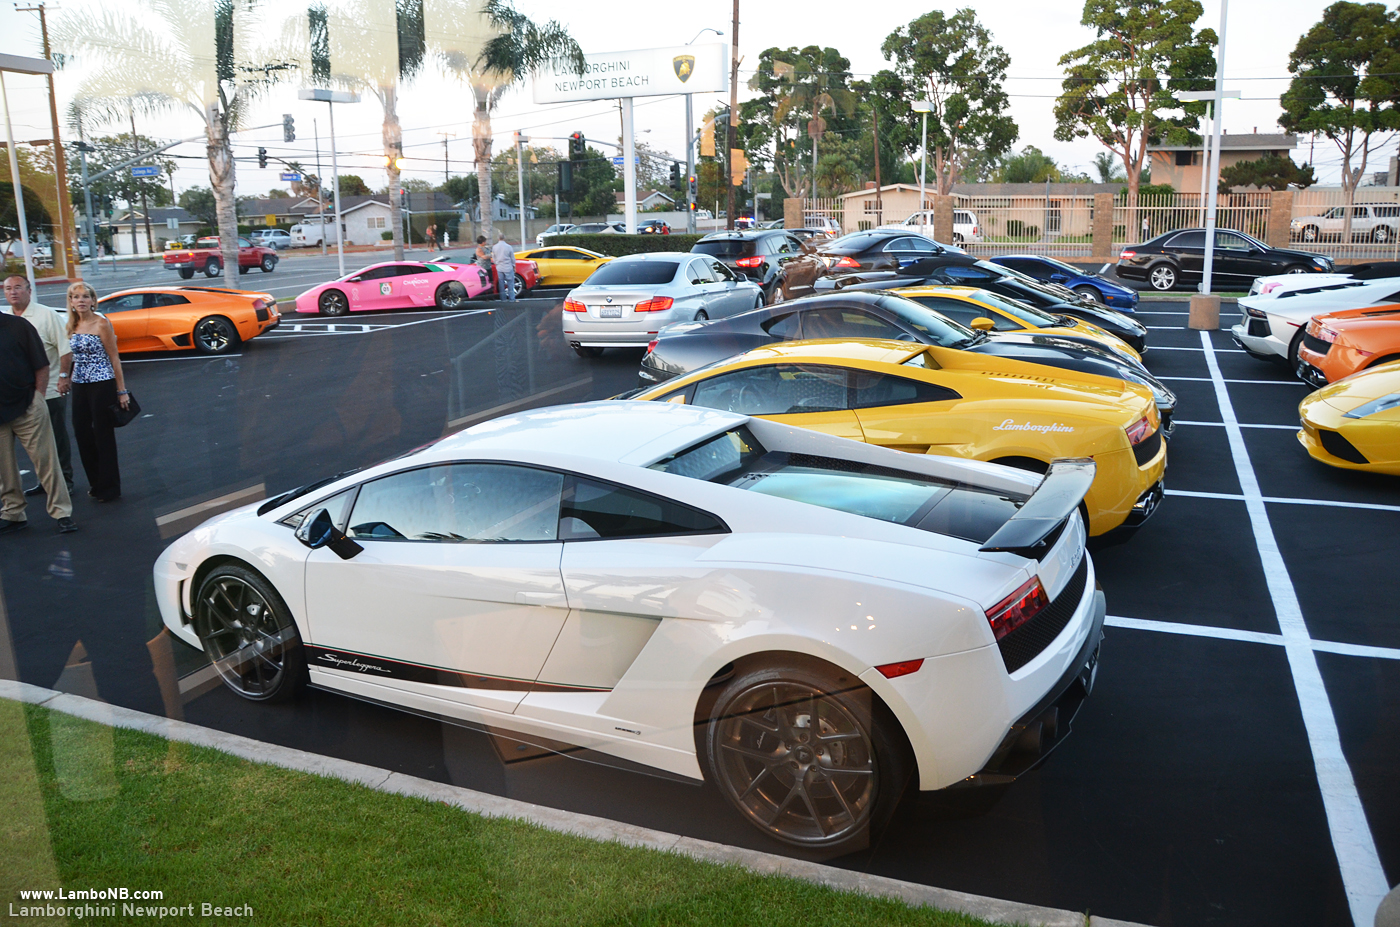 Lamborghini Newport Beach Blog: Lamborghini Newport Beach Grand Opening ...